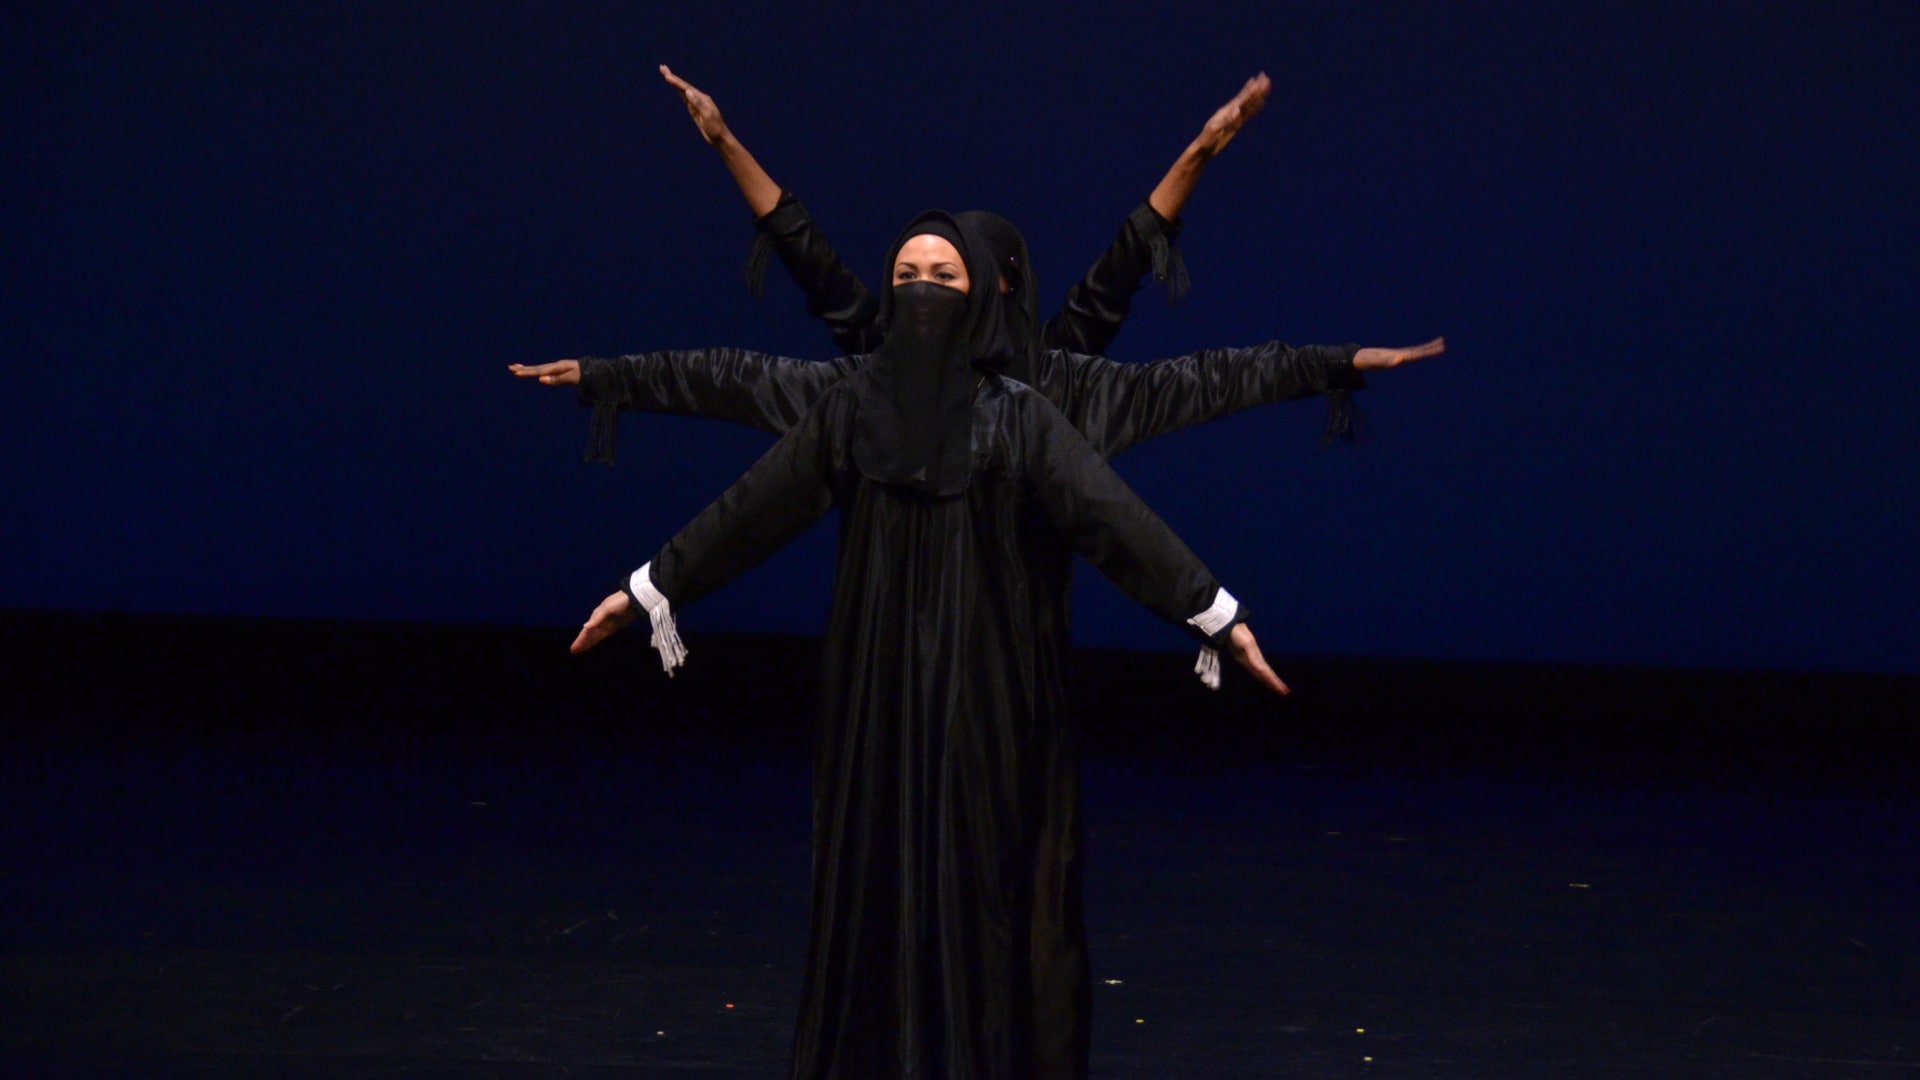 هل يجتمع النقاب والهيب هوب؟ راقصة أمريكية تخلق مساحة لتمكين النساء المسلمات